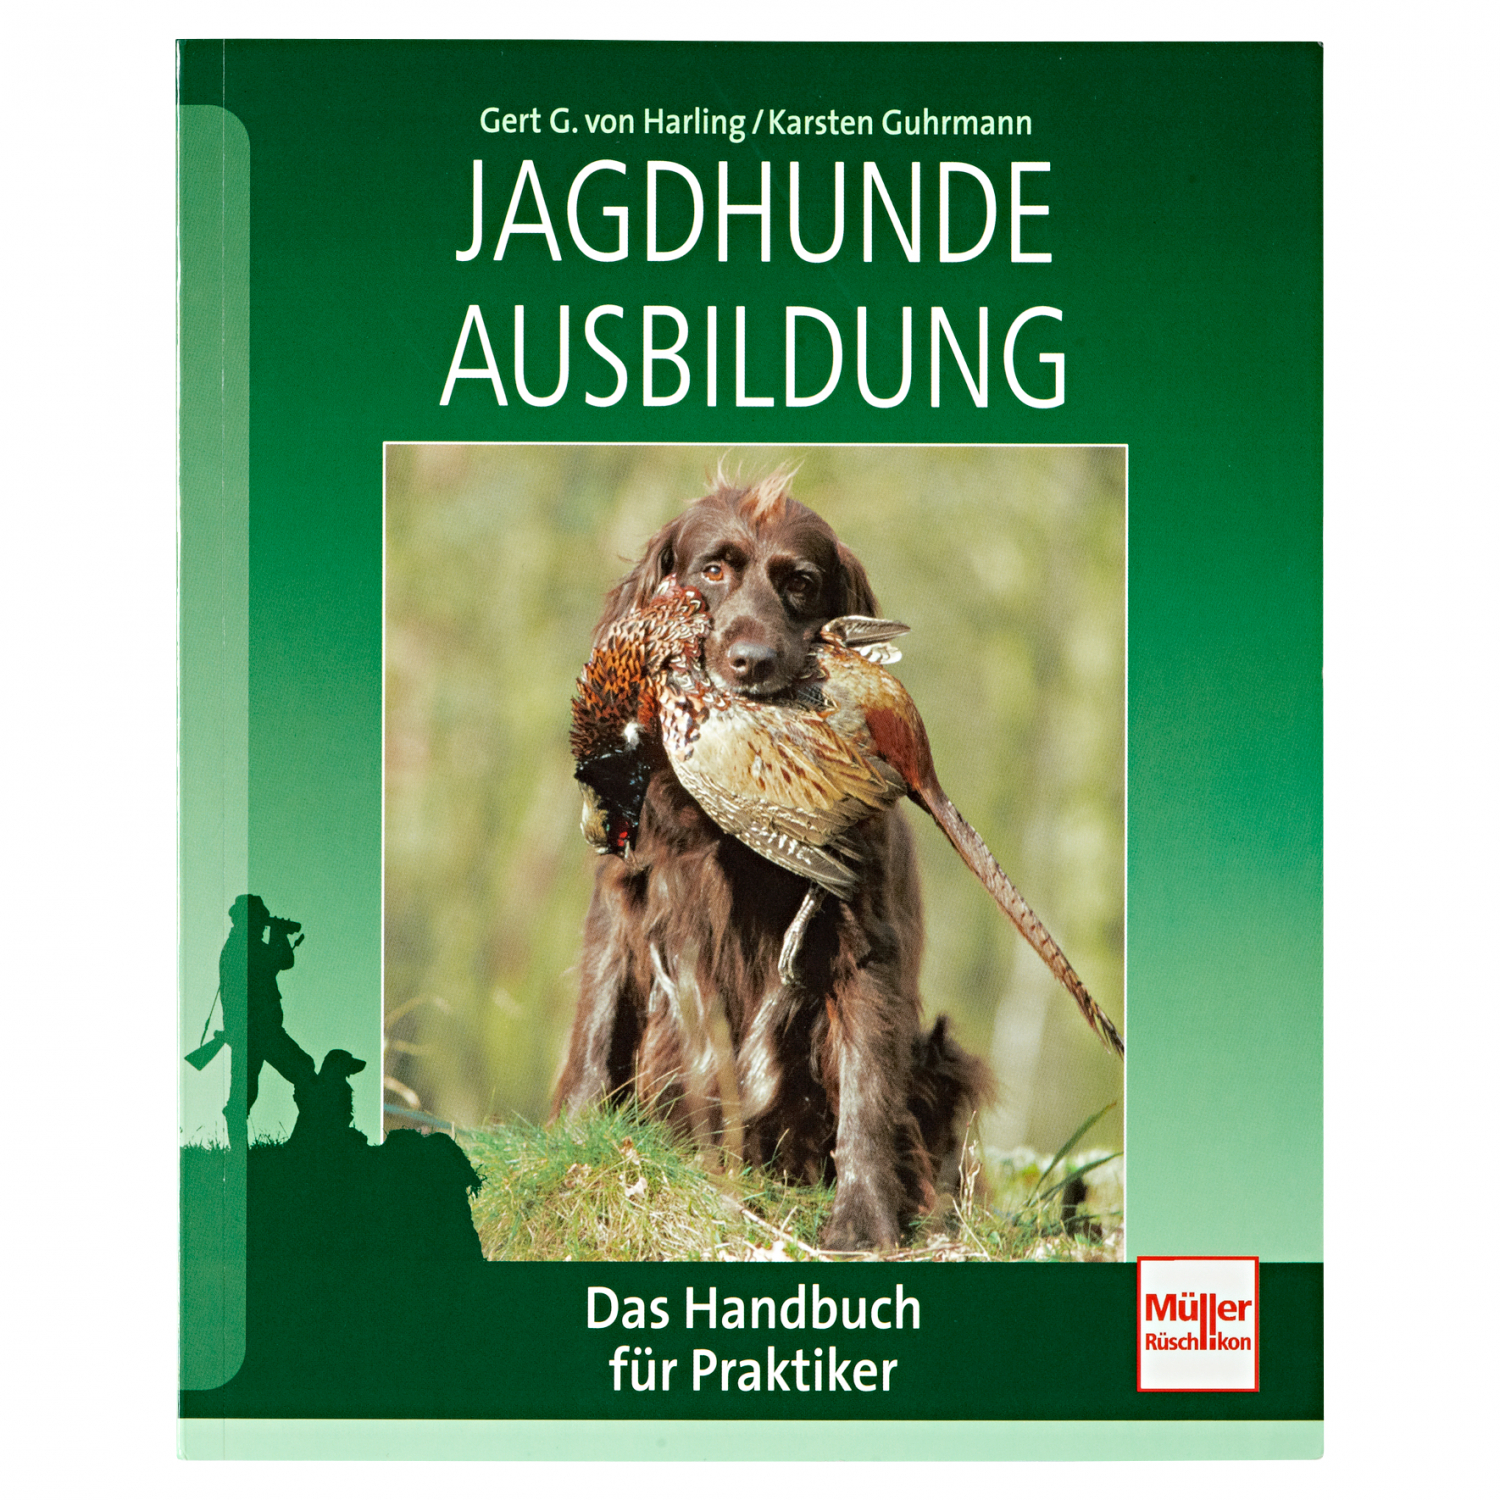 "Jagdhunde-Ausbildung" by Gert G. von Harling/Karsten Guhrmann 